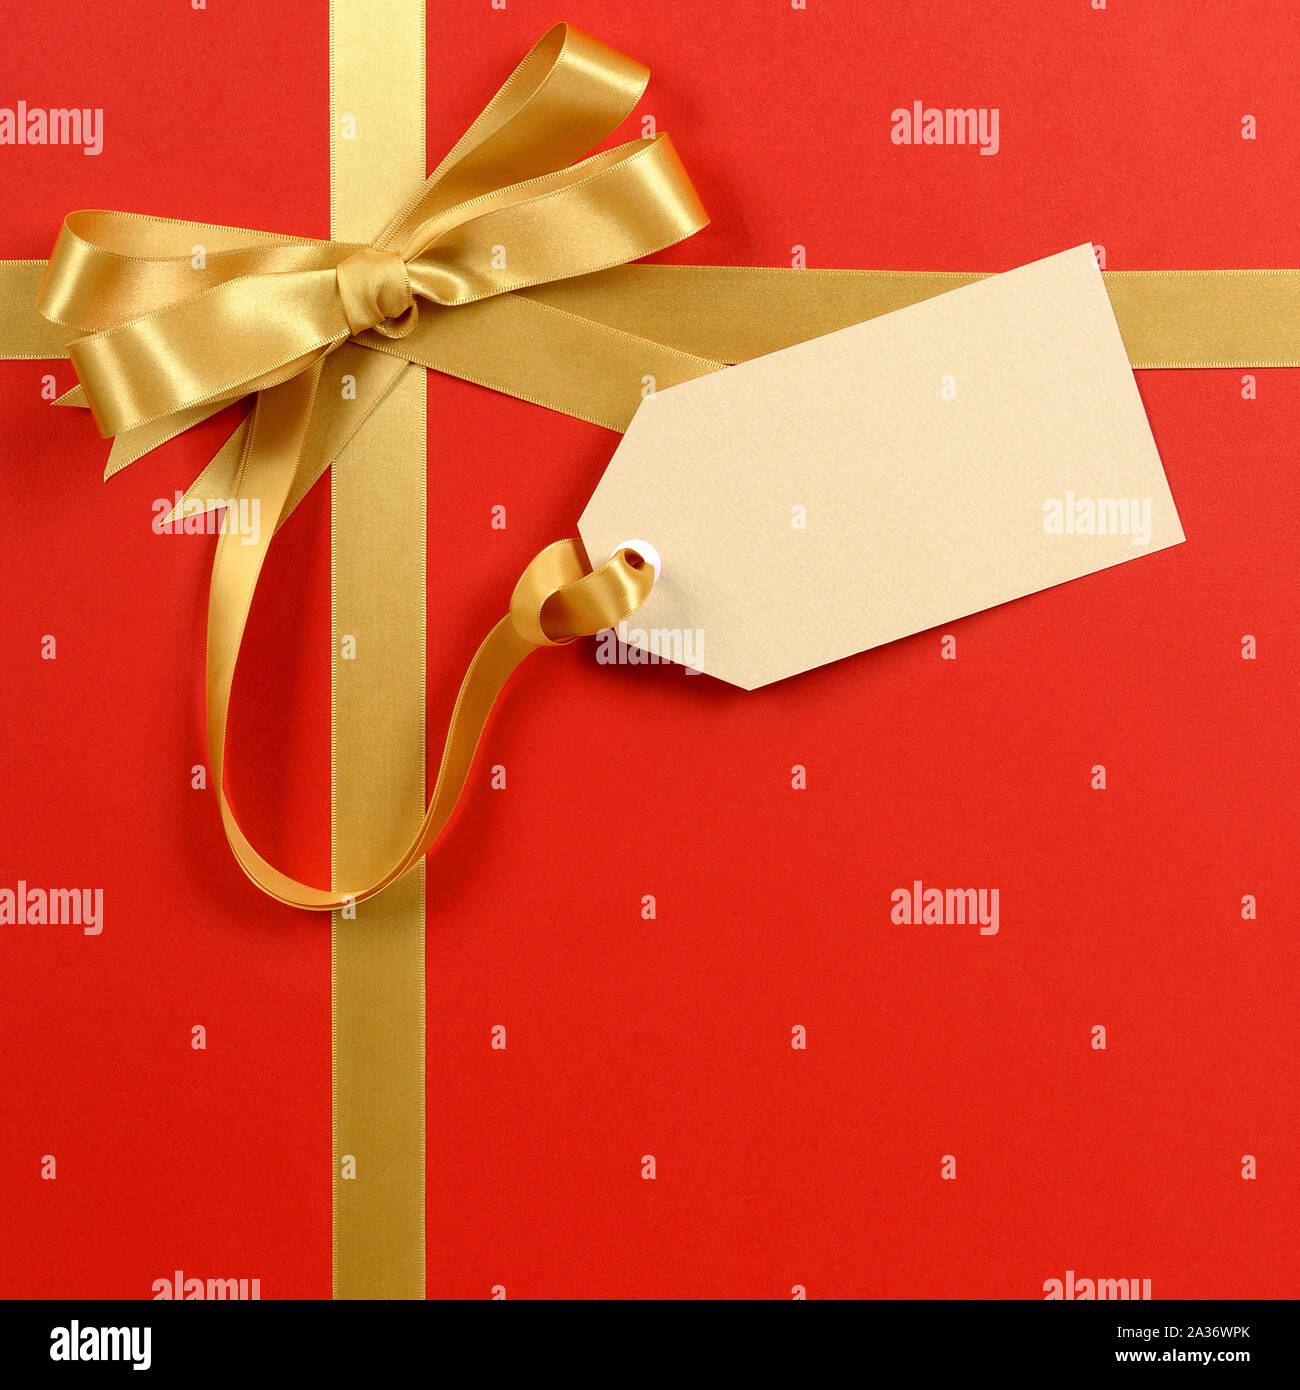 Rot Geschenk Hintergrund, gold Schleife, leer Geschenk Tag oder Etikett, Kopie, vertikal Stockfoto